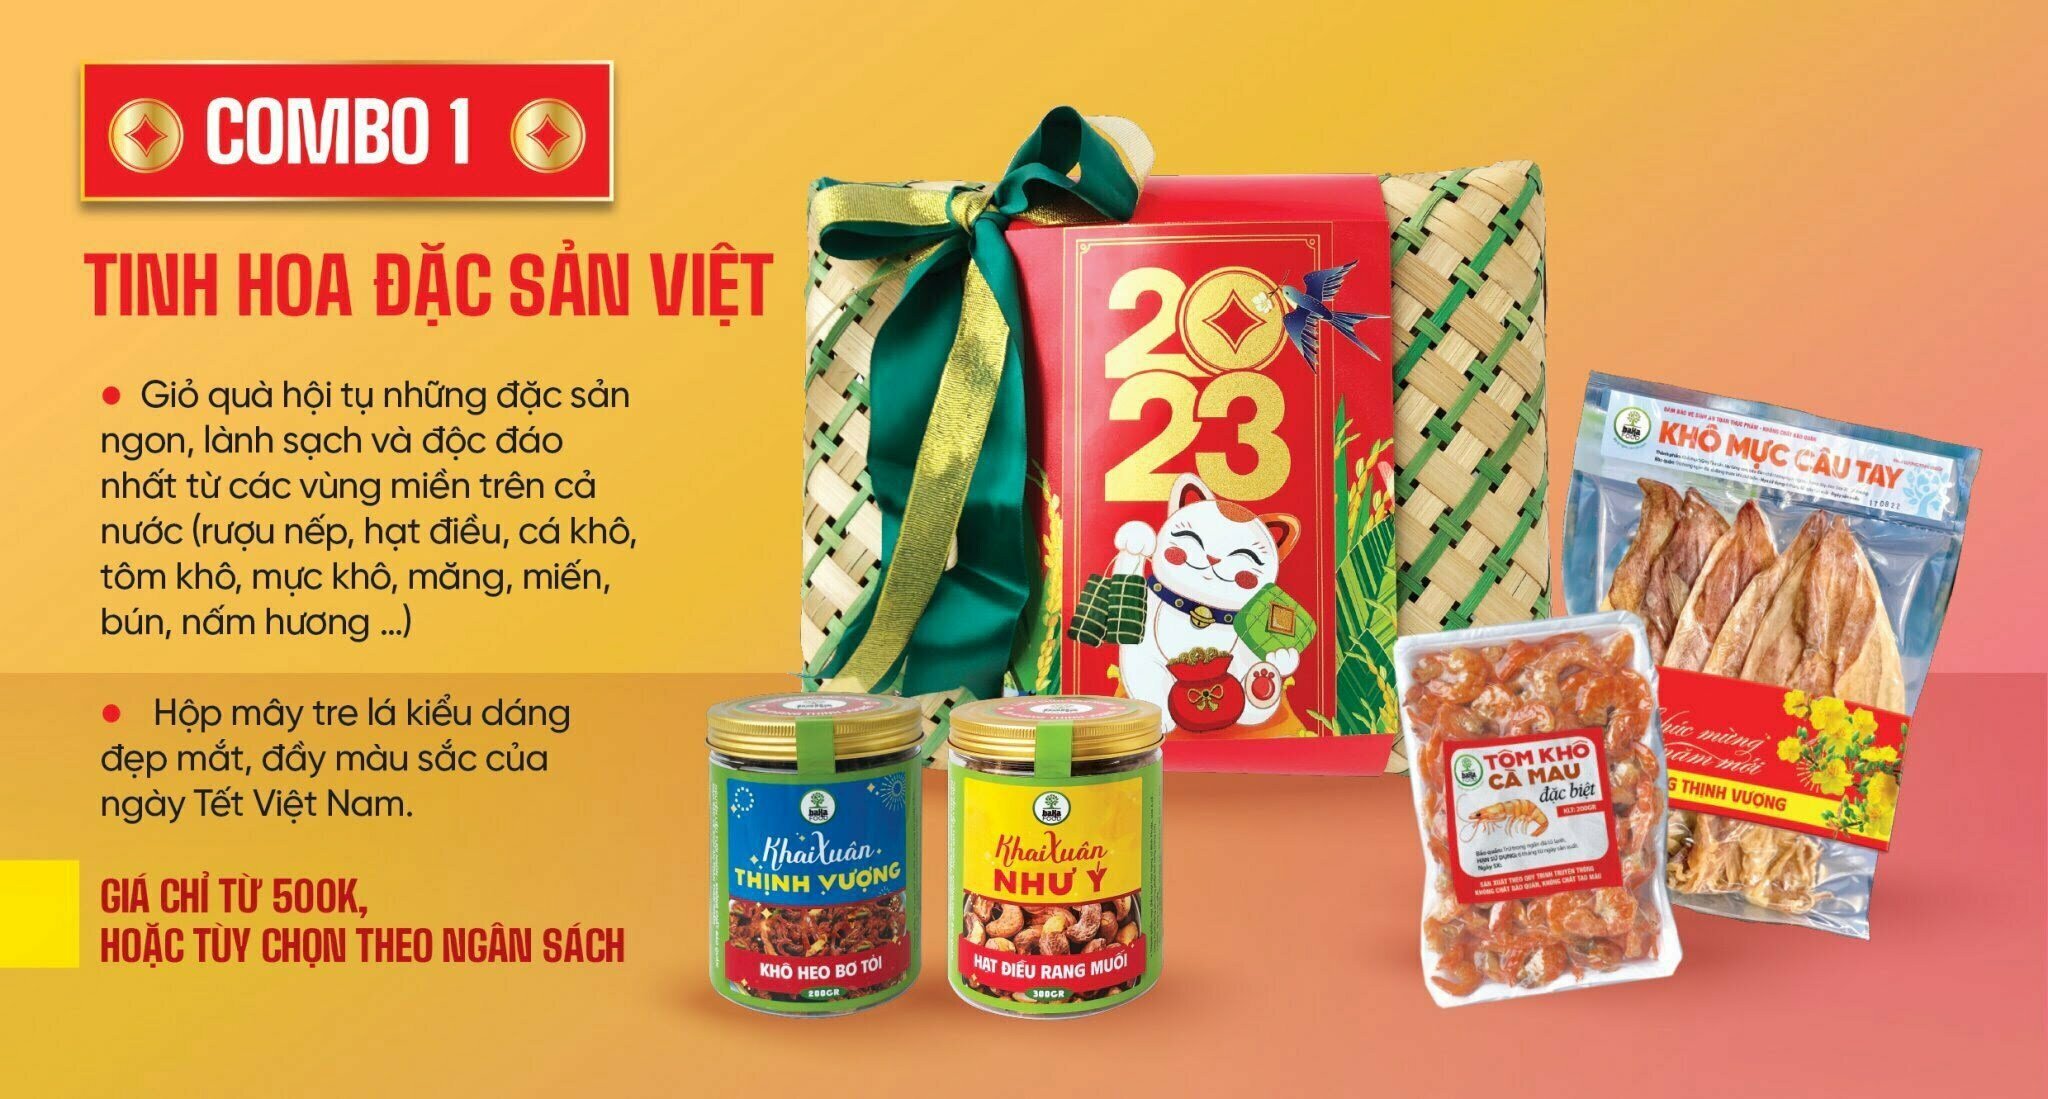 Tinh Hoa Đặc Sản Việt. Giỏ quà hội tụ những đặc sản ngon lành, sạch và độc đá nhất từ các vùng miền trên cả nước